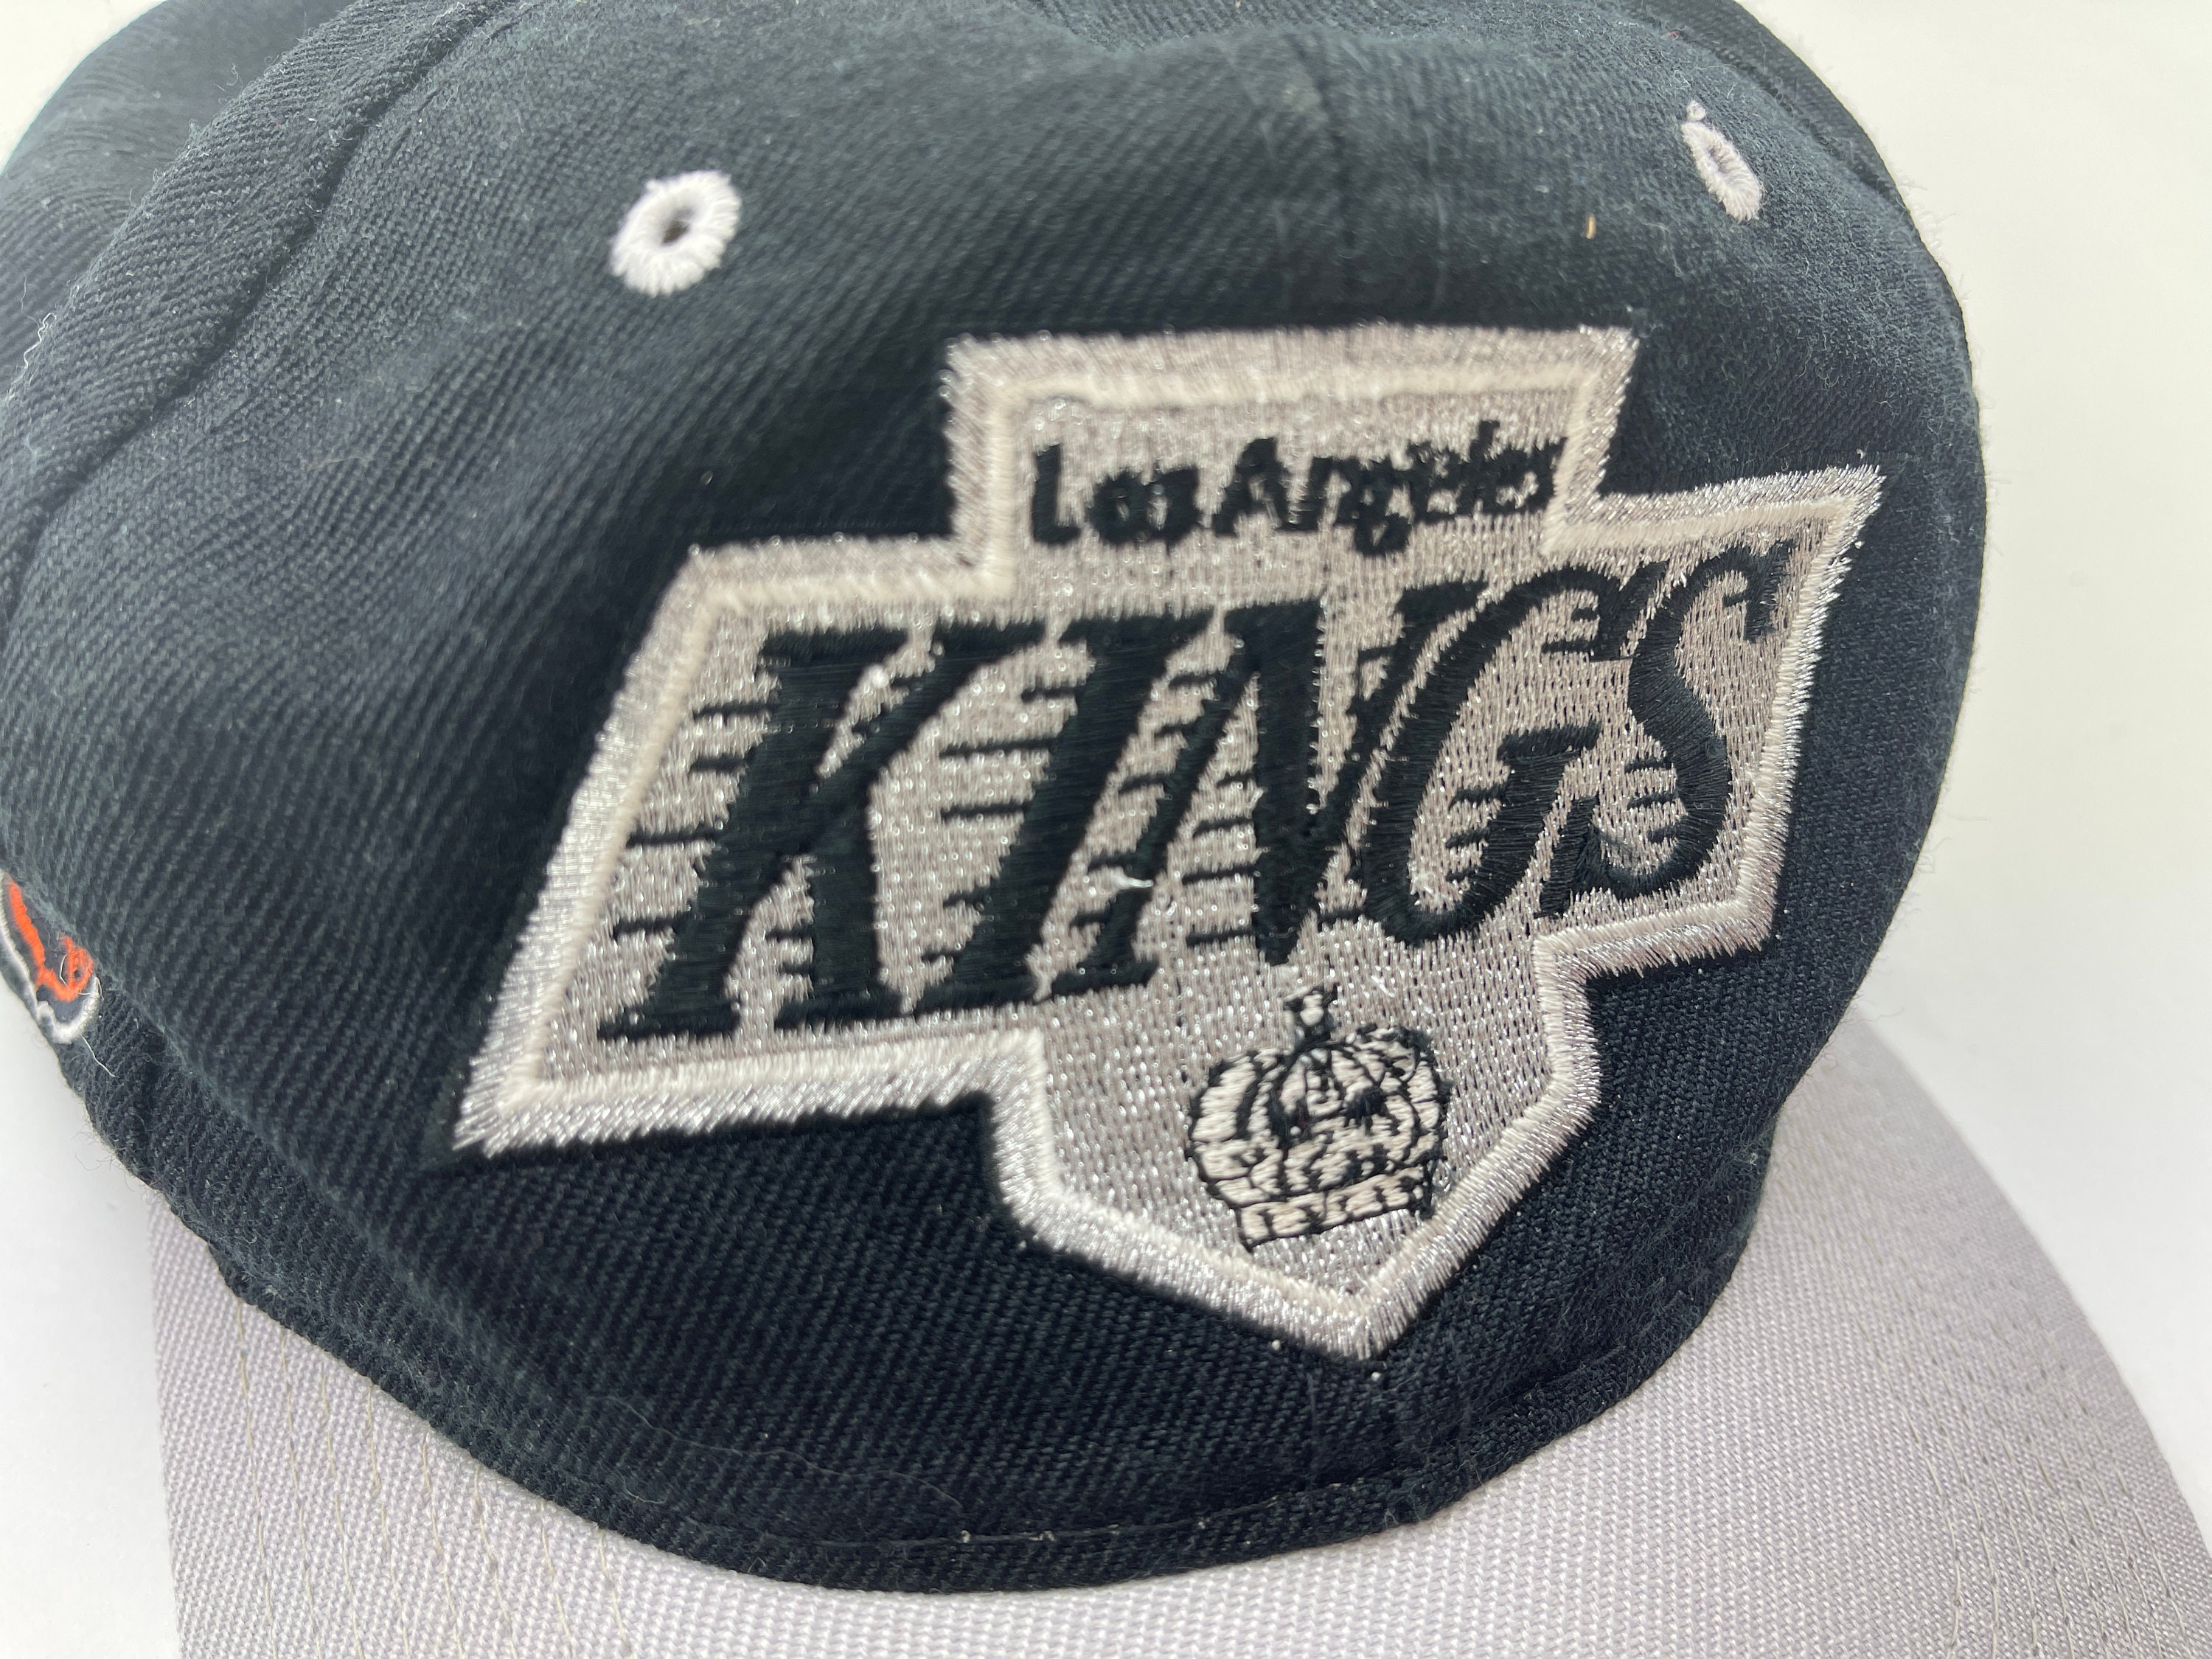 Los Angeles Kings Cap – VintageFolk